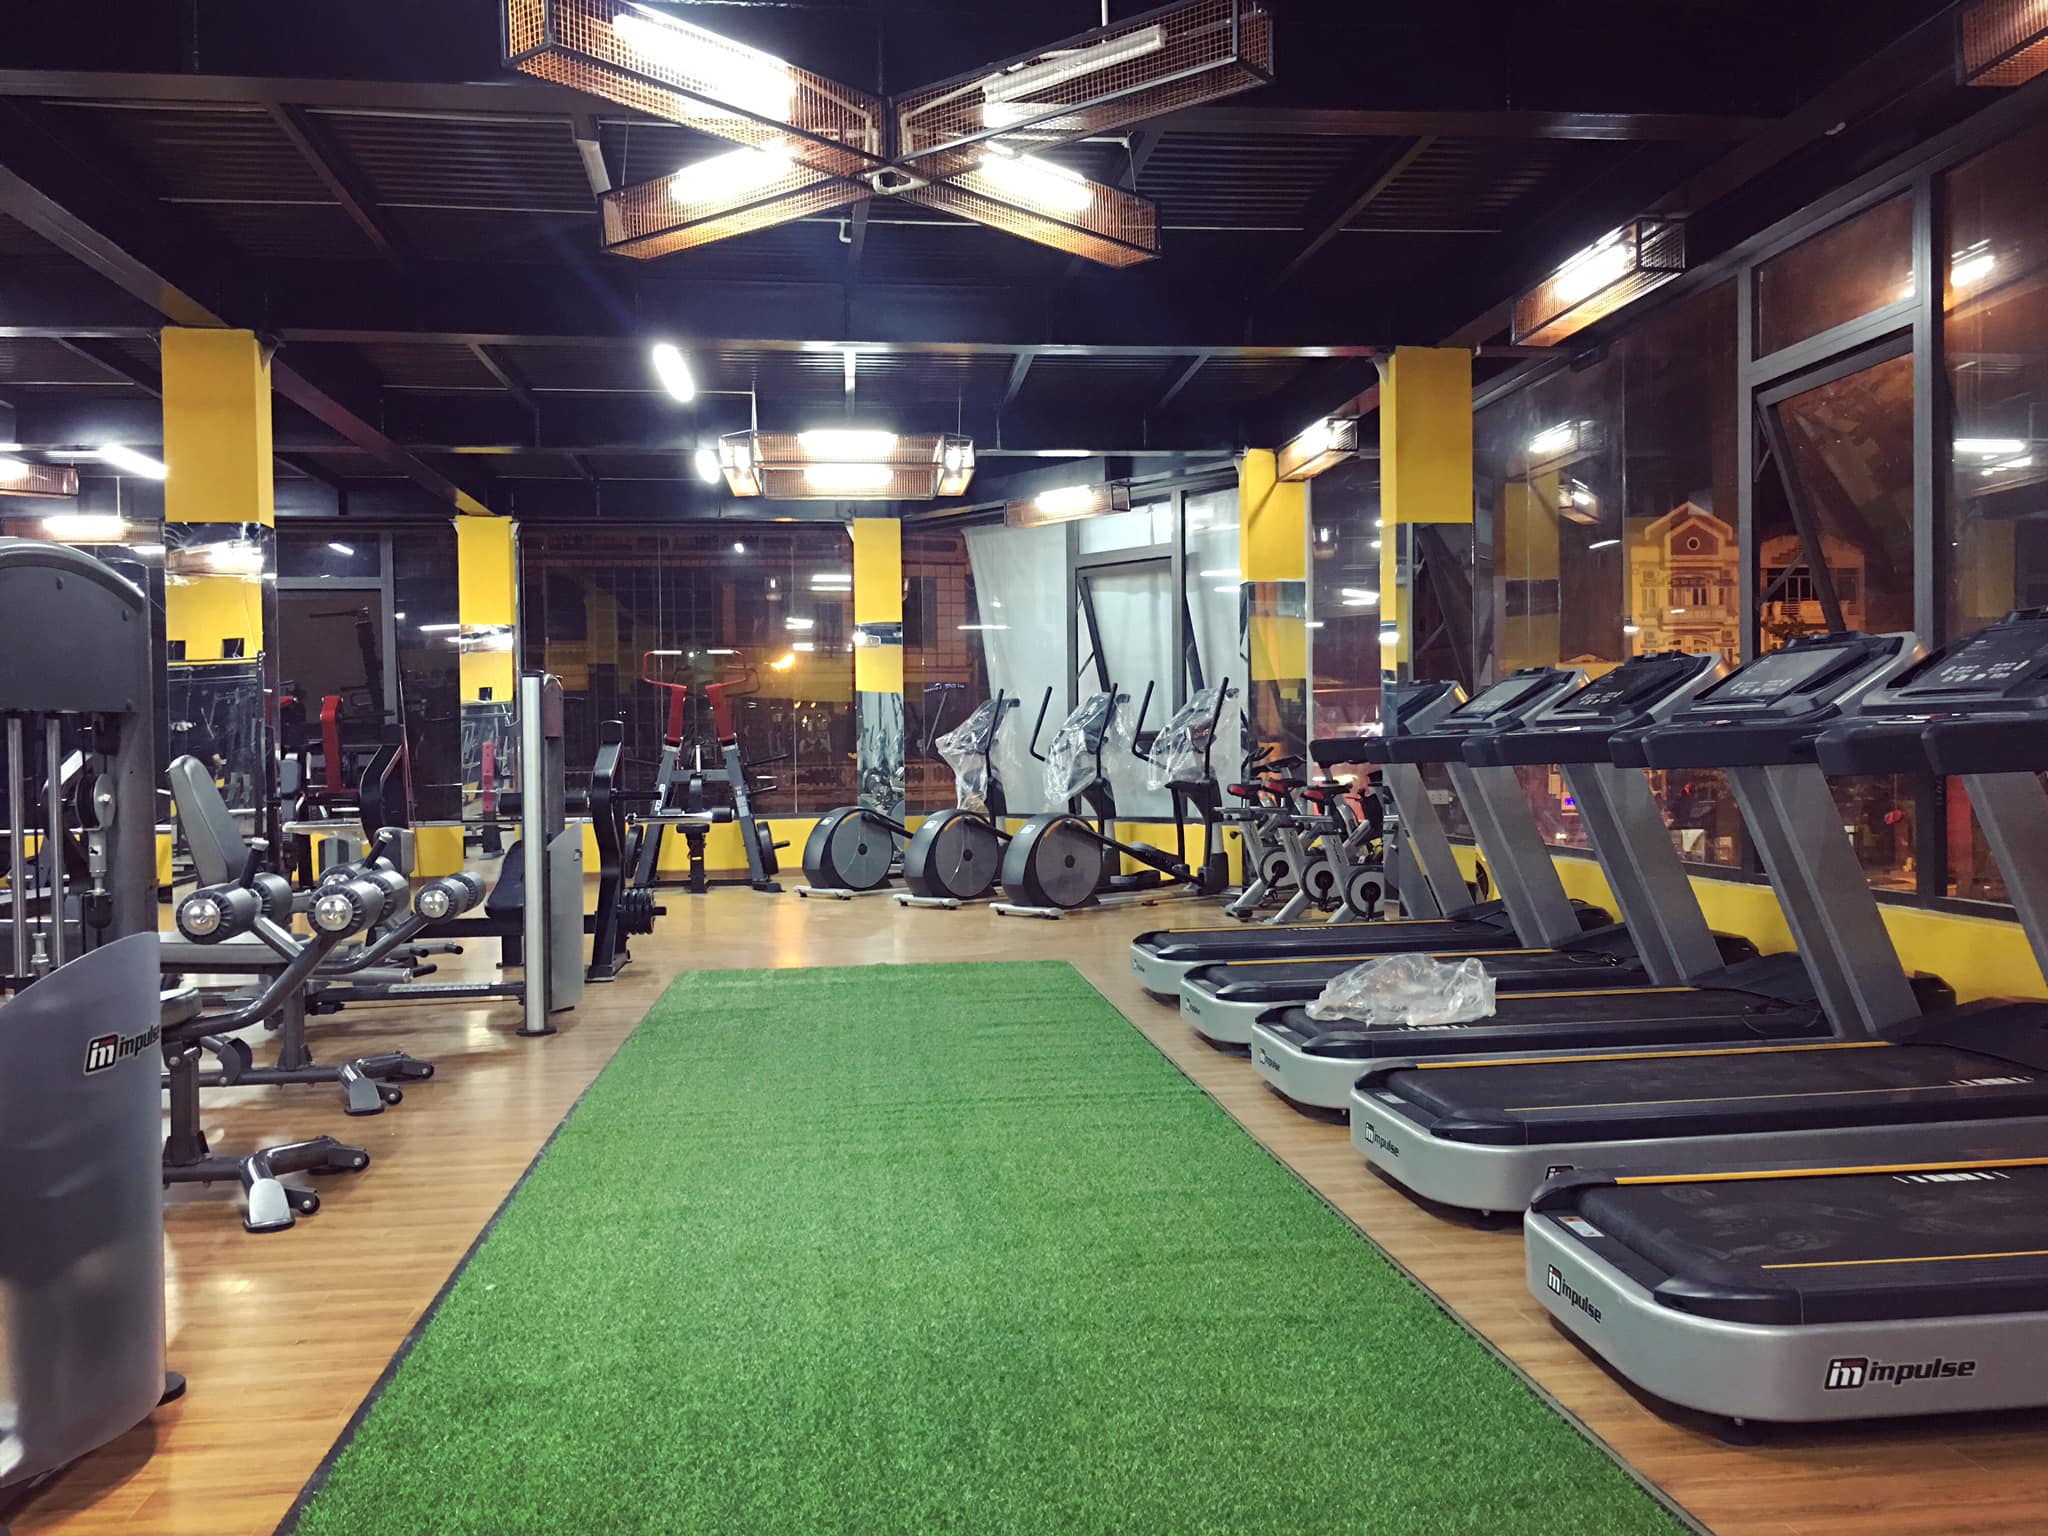 setup phòng gym fitness tại Lào cai